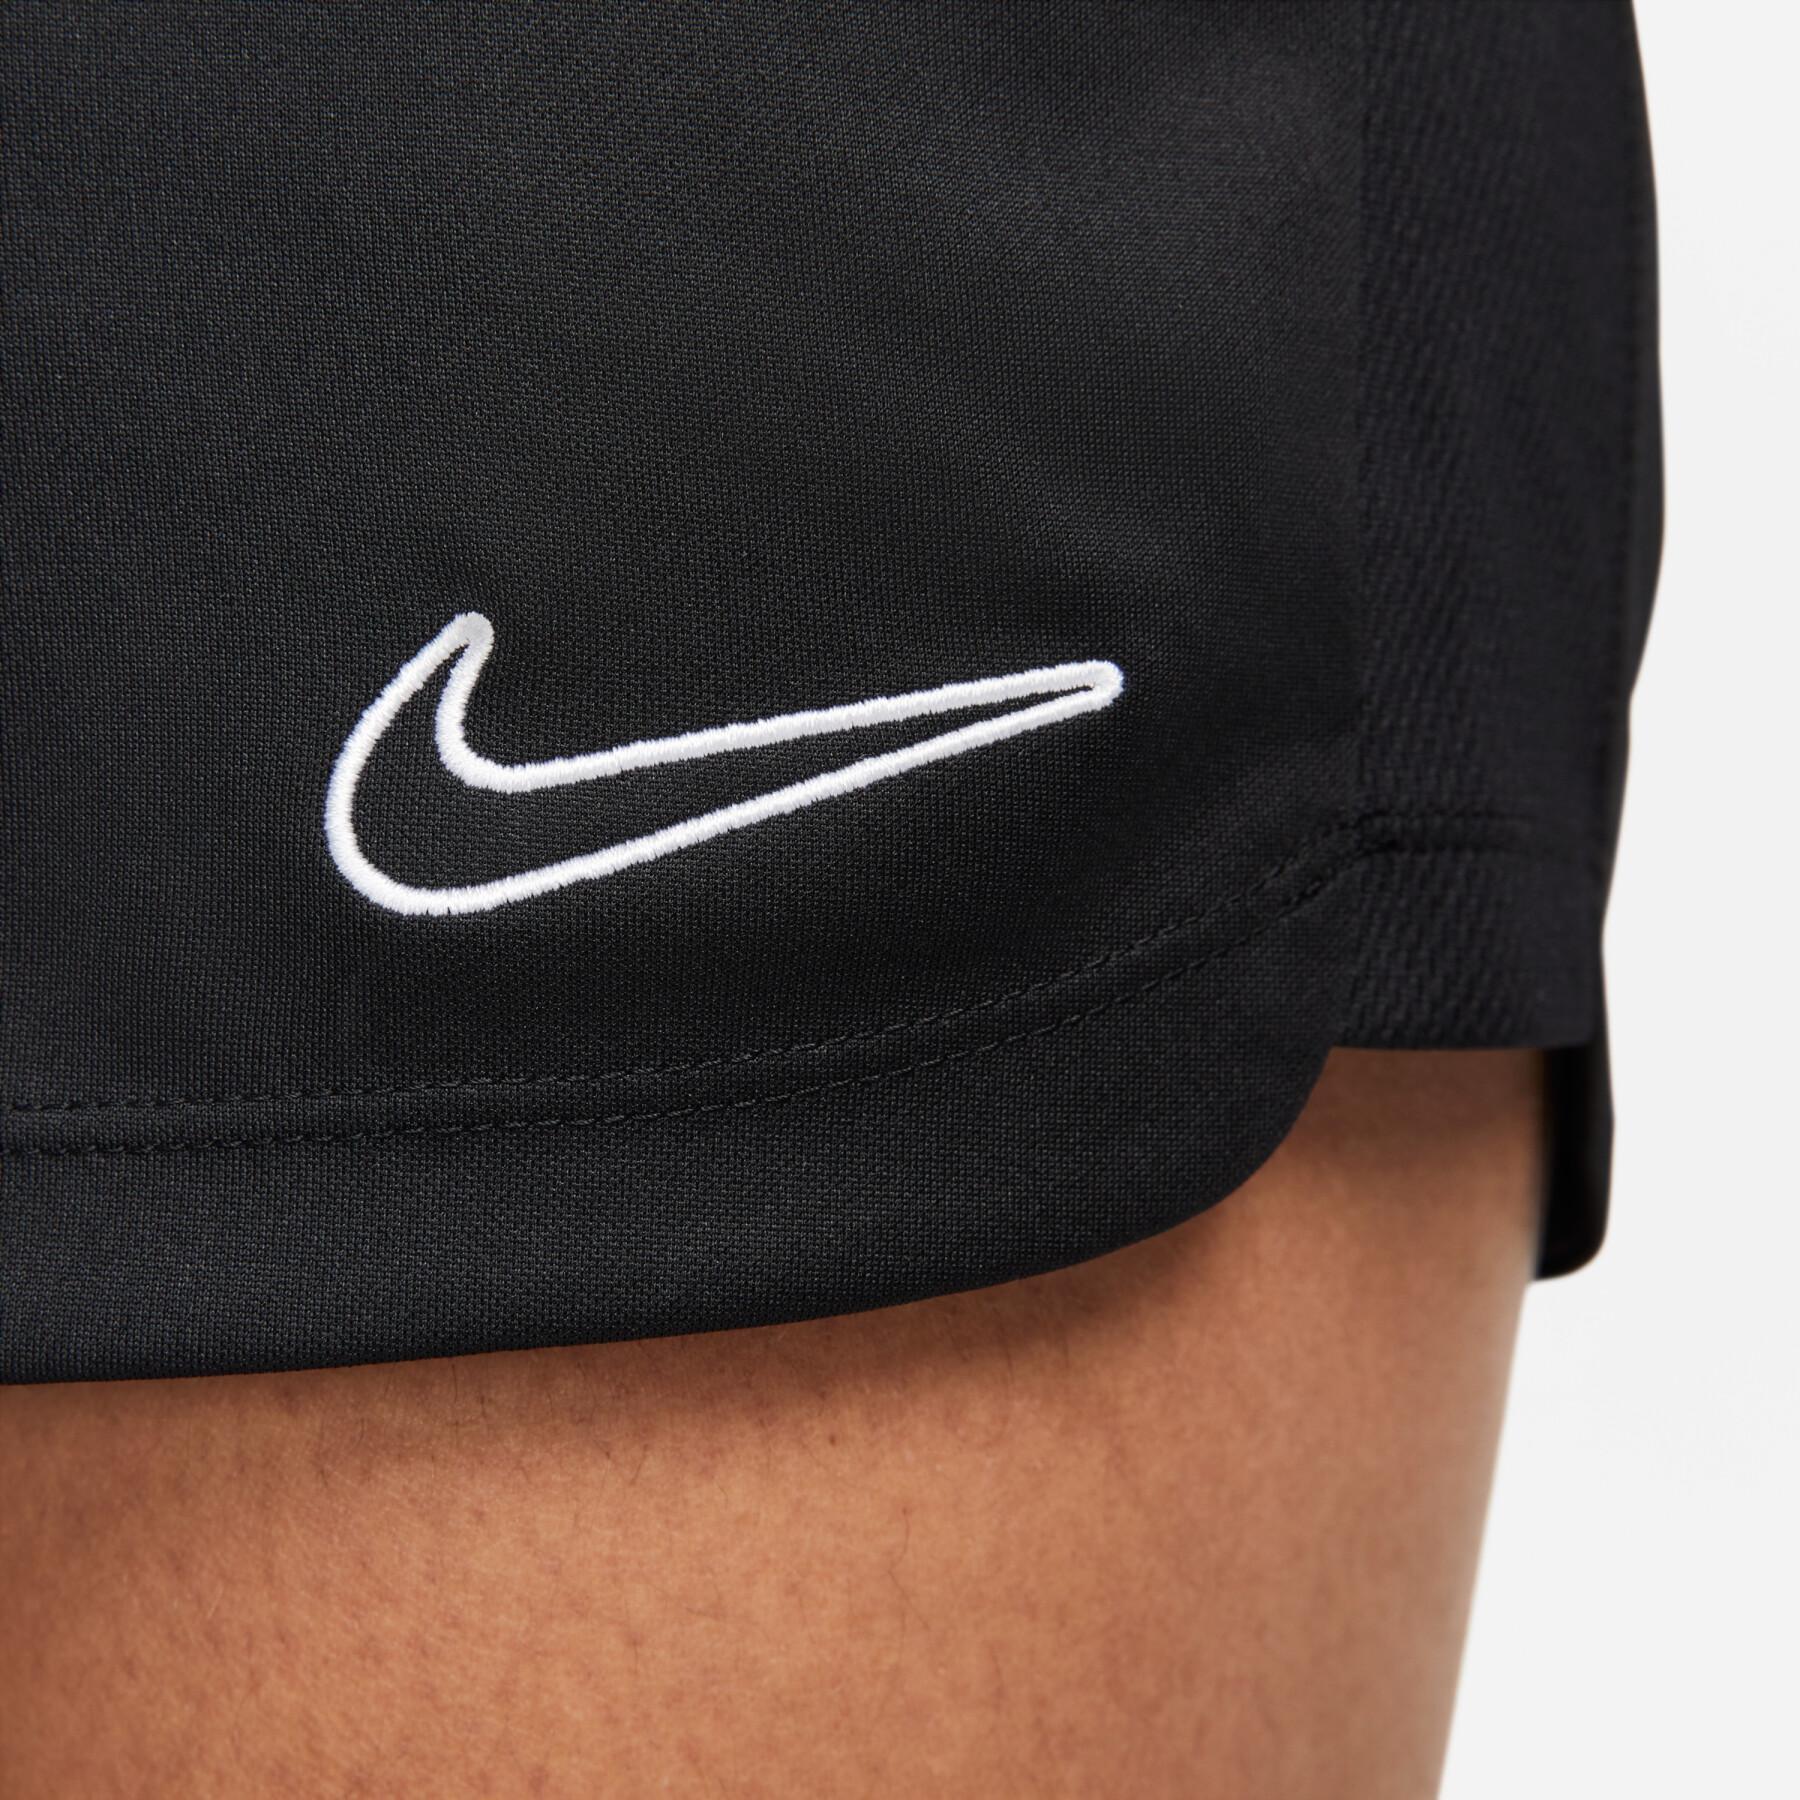 Pantaloncini da donna Nike Dri-Fit Academy 23